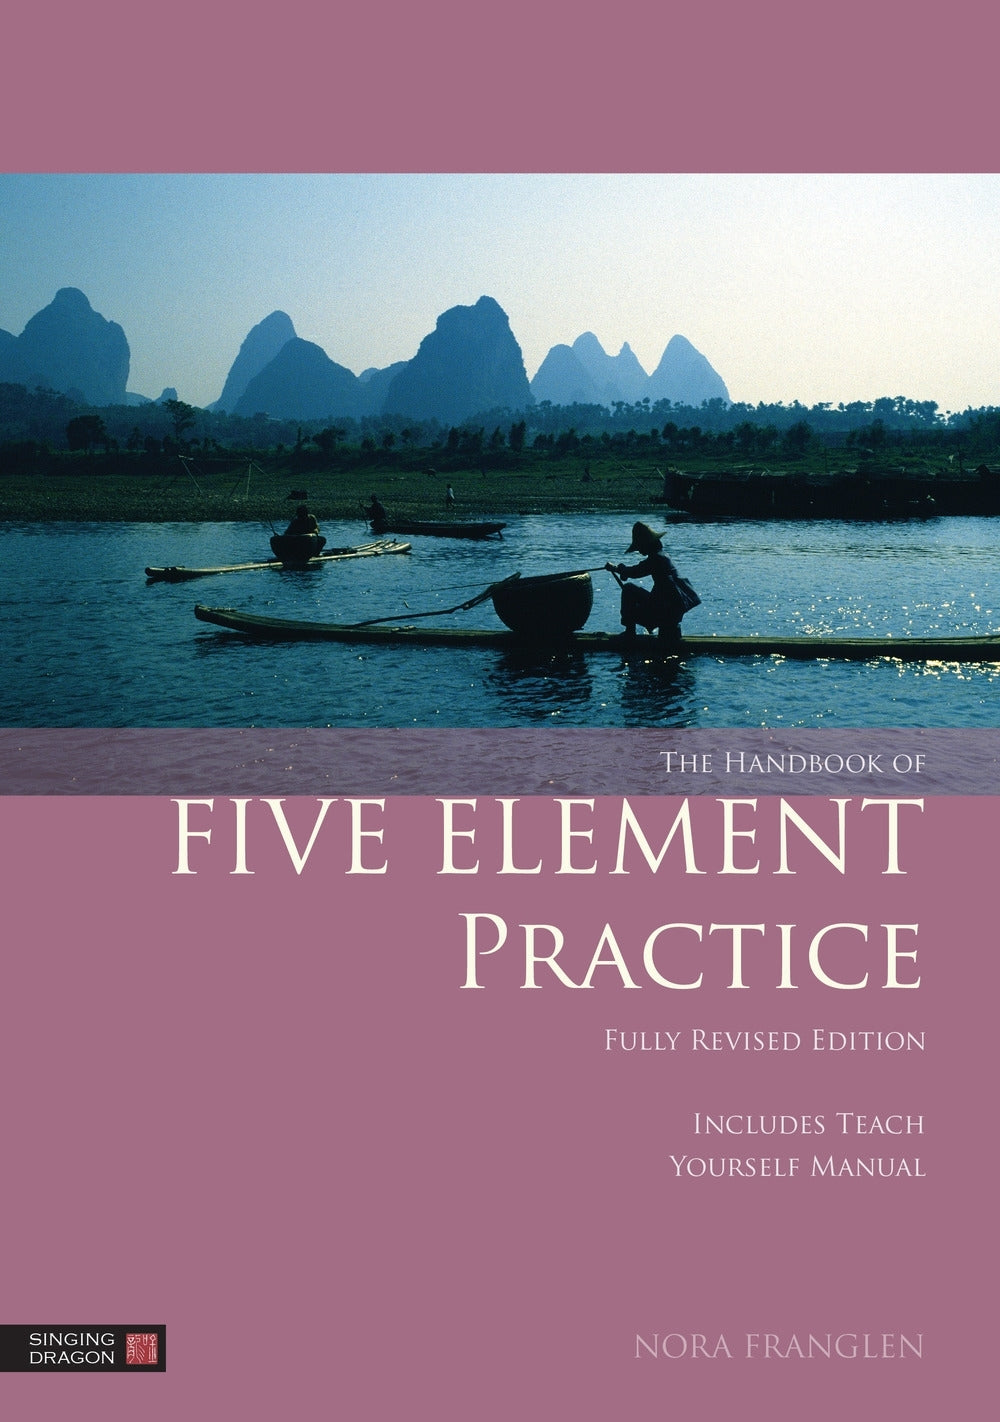 The Handbook of Five Element Practice by Nora Franglen